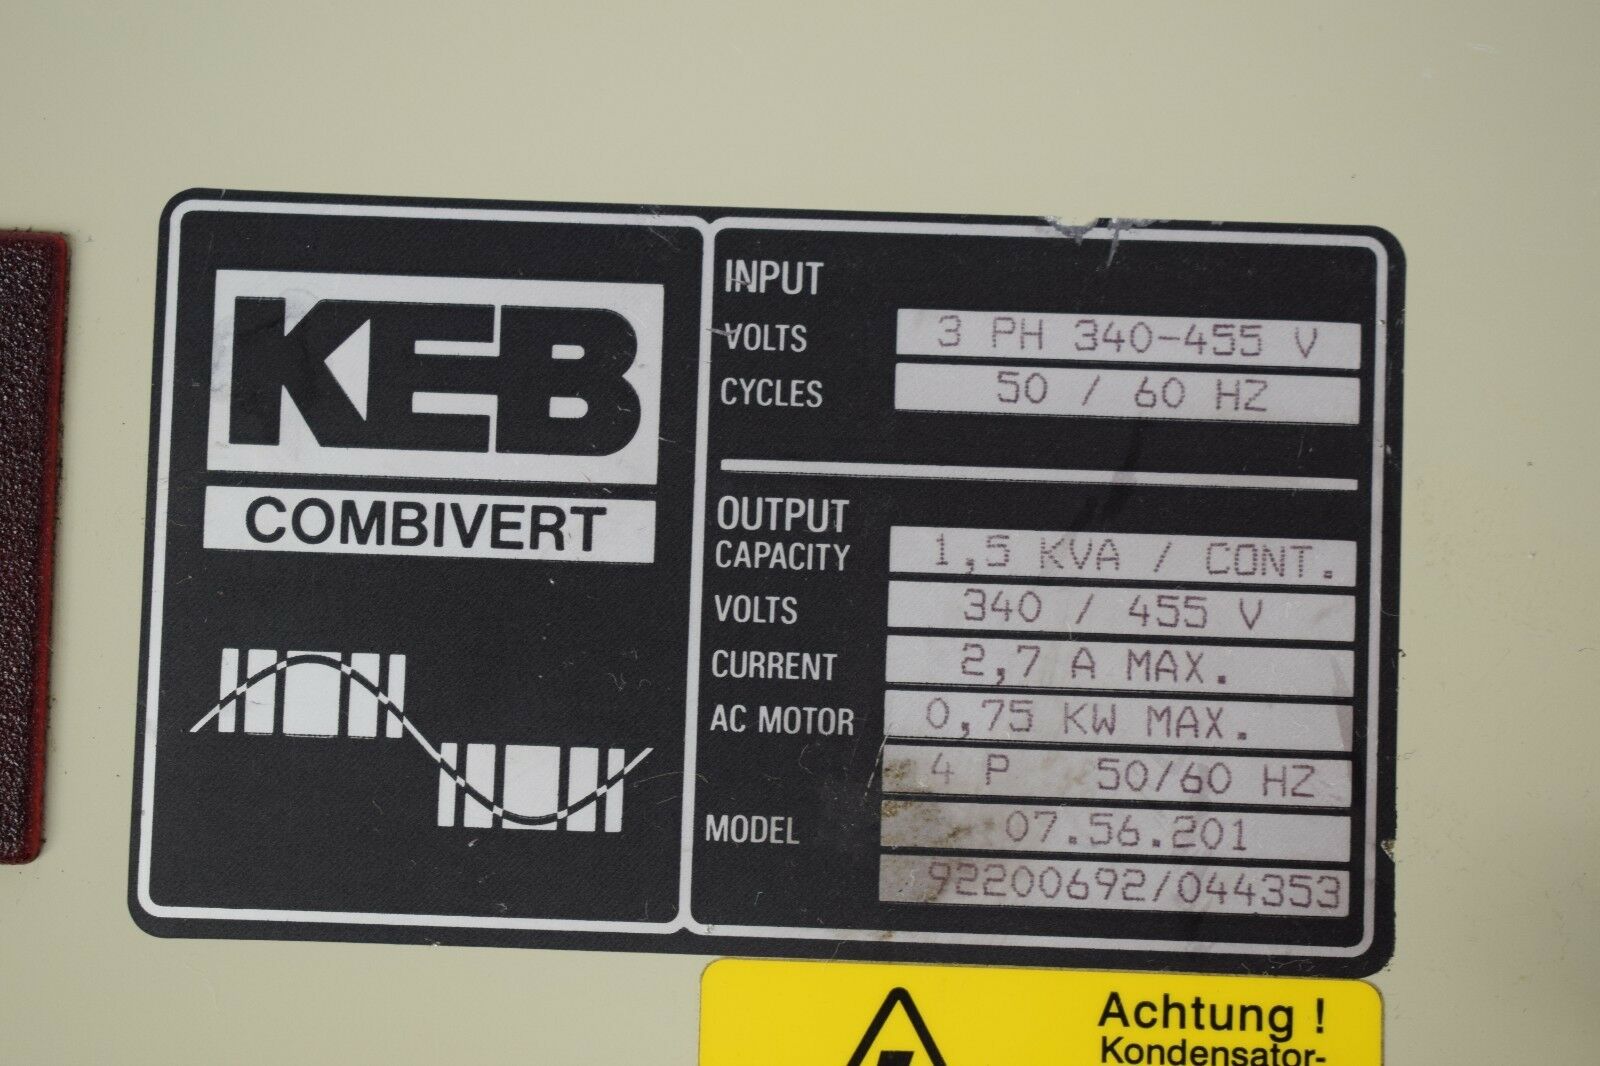 KEB Combivert Frequenzumrichter 07.56.201